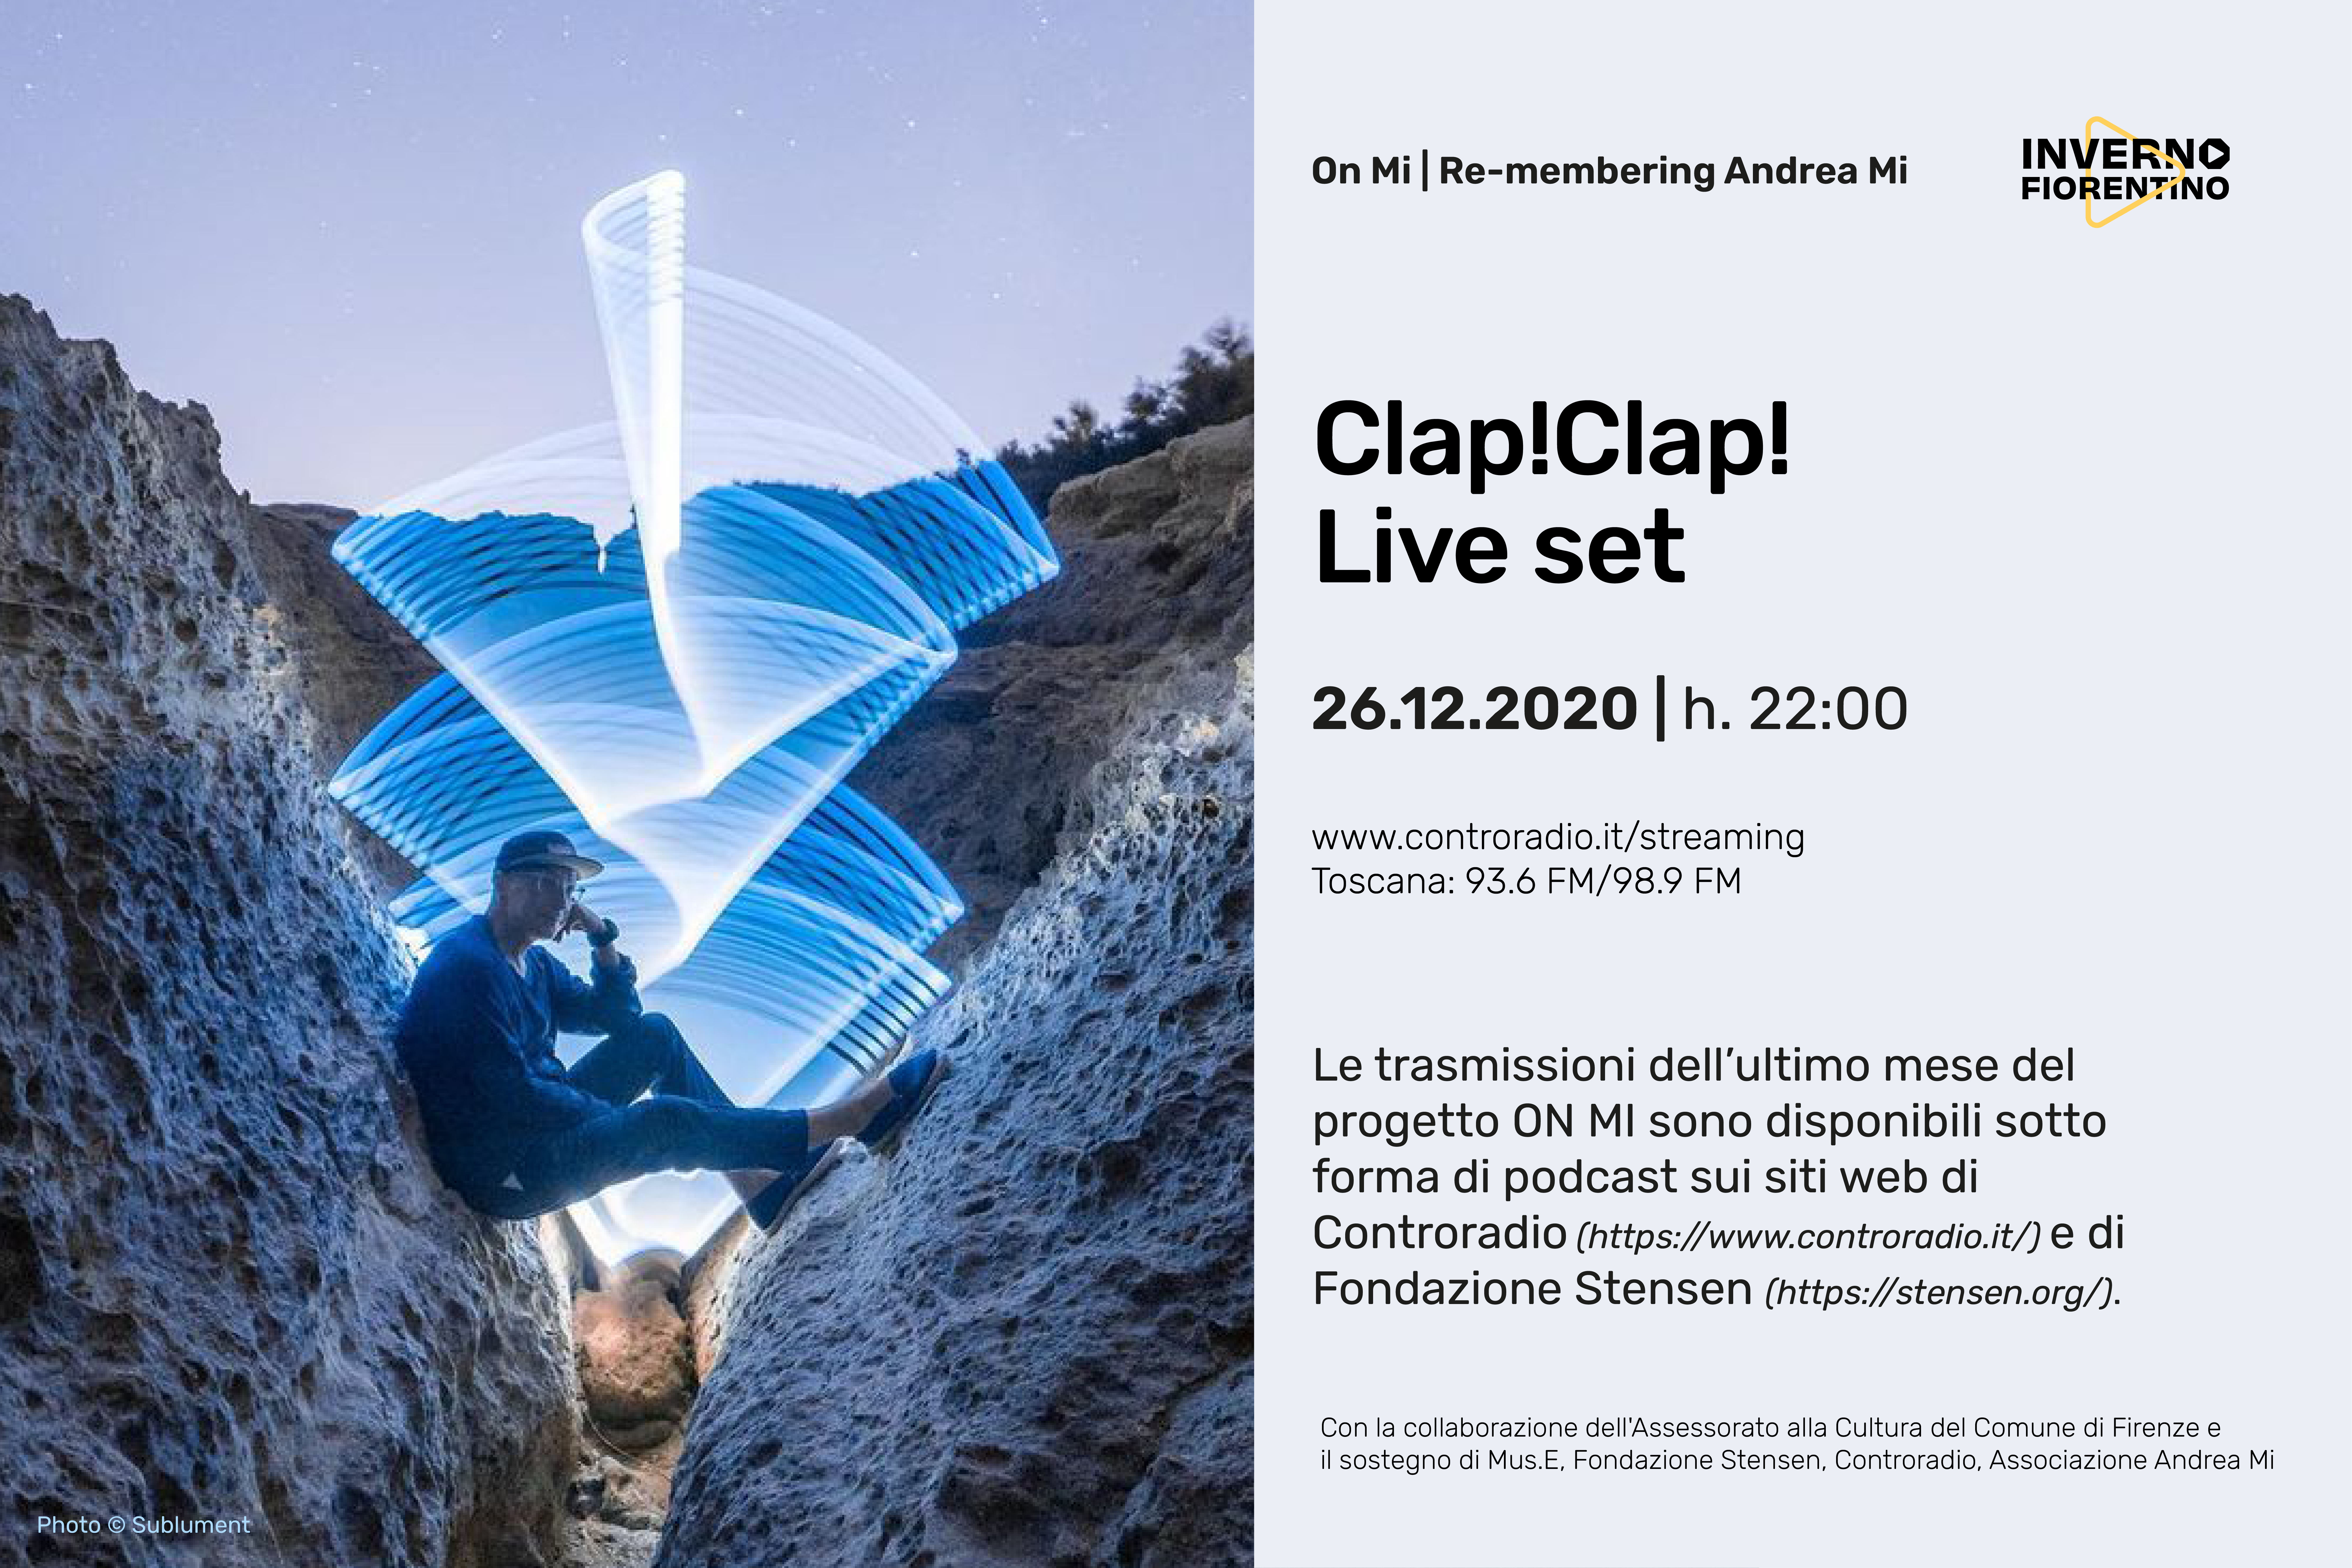 “On Mi”, finale con il live set di Clap!Clap!